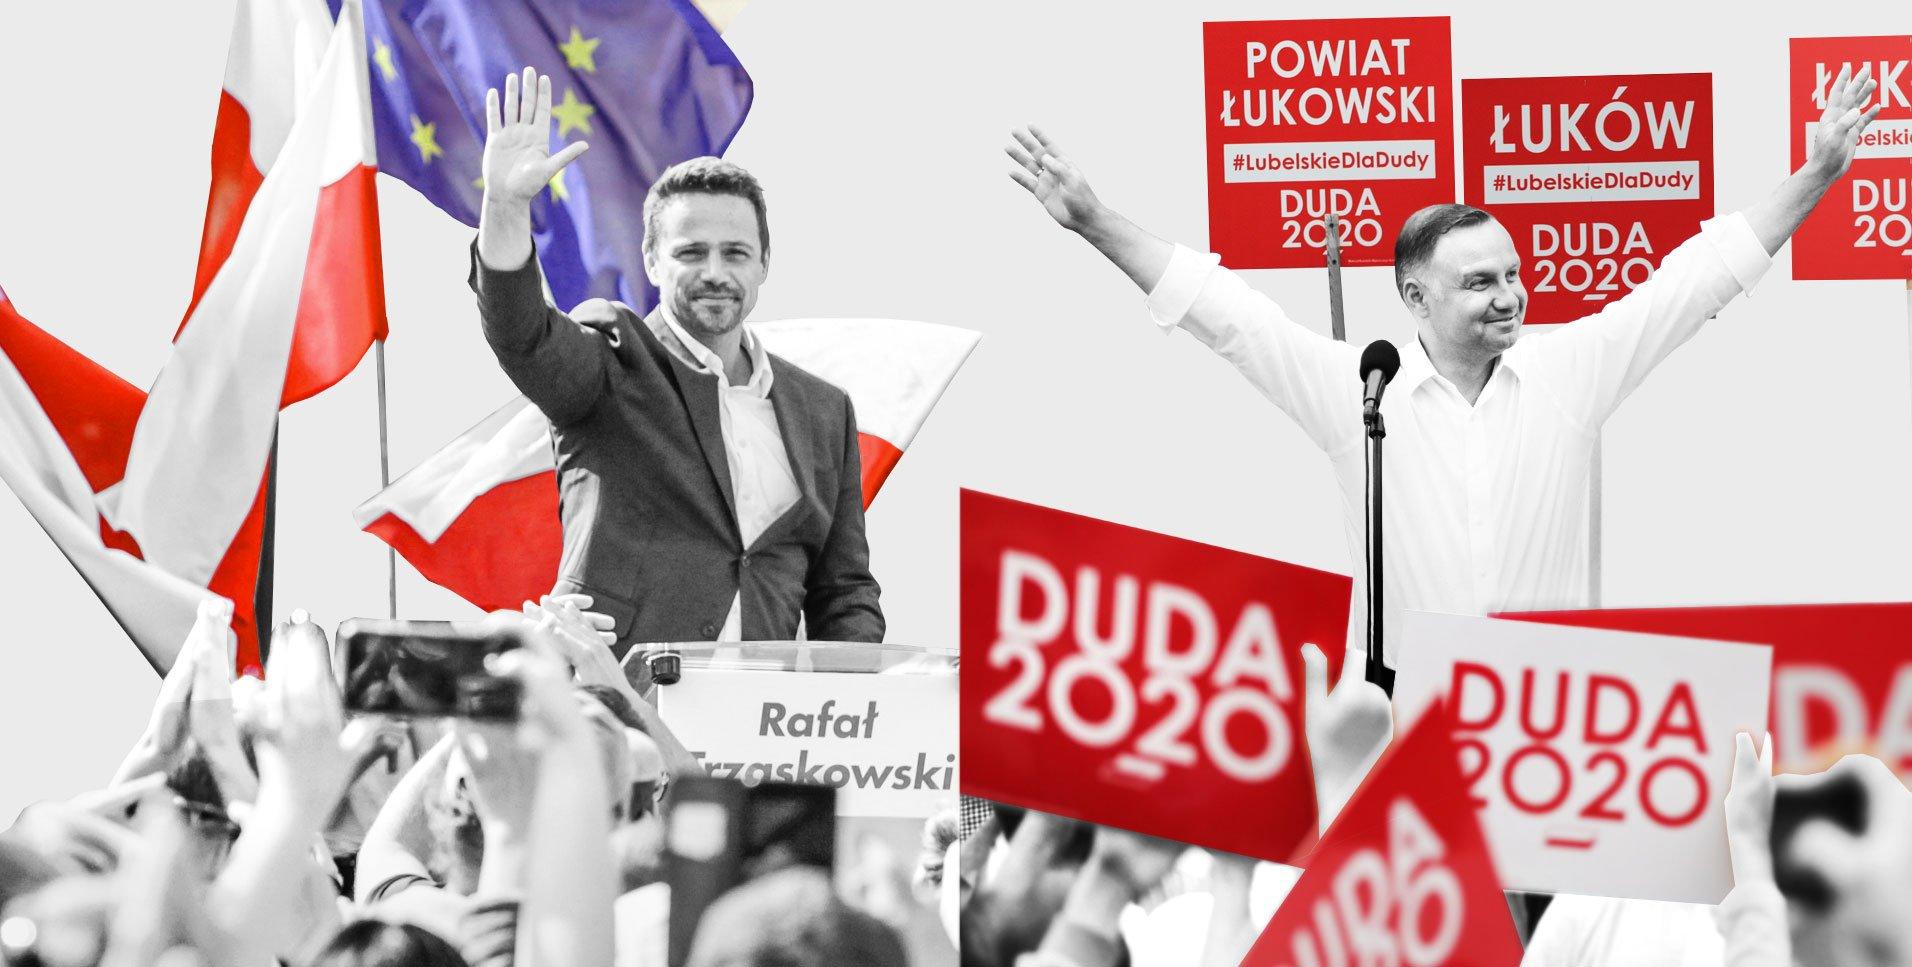 Rafał Trzaskowski, Andrzej Duda - sondaż Ipsos przynosi prognozę na II turę